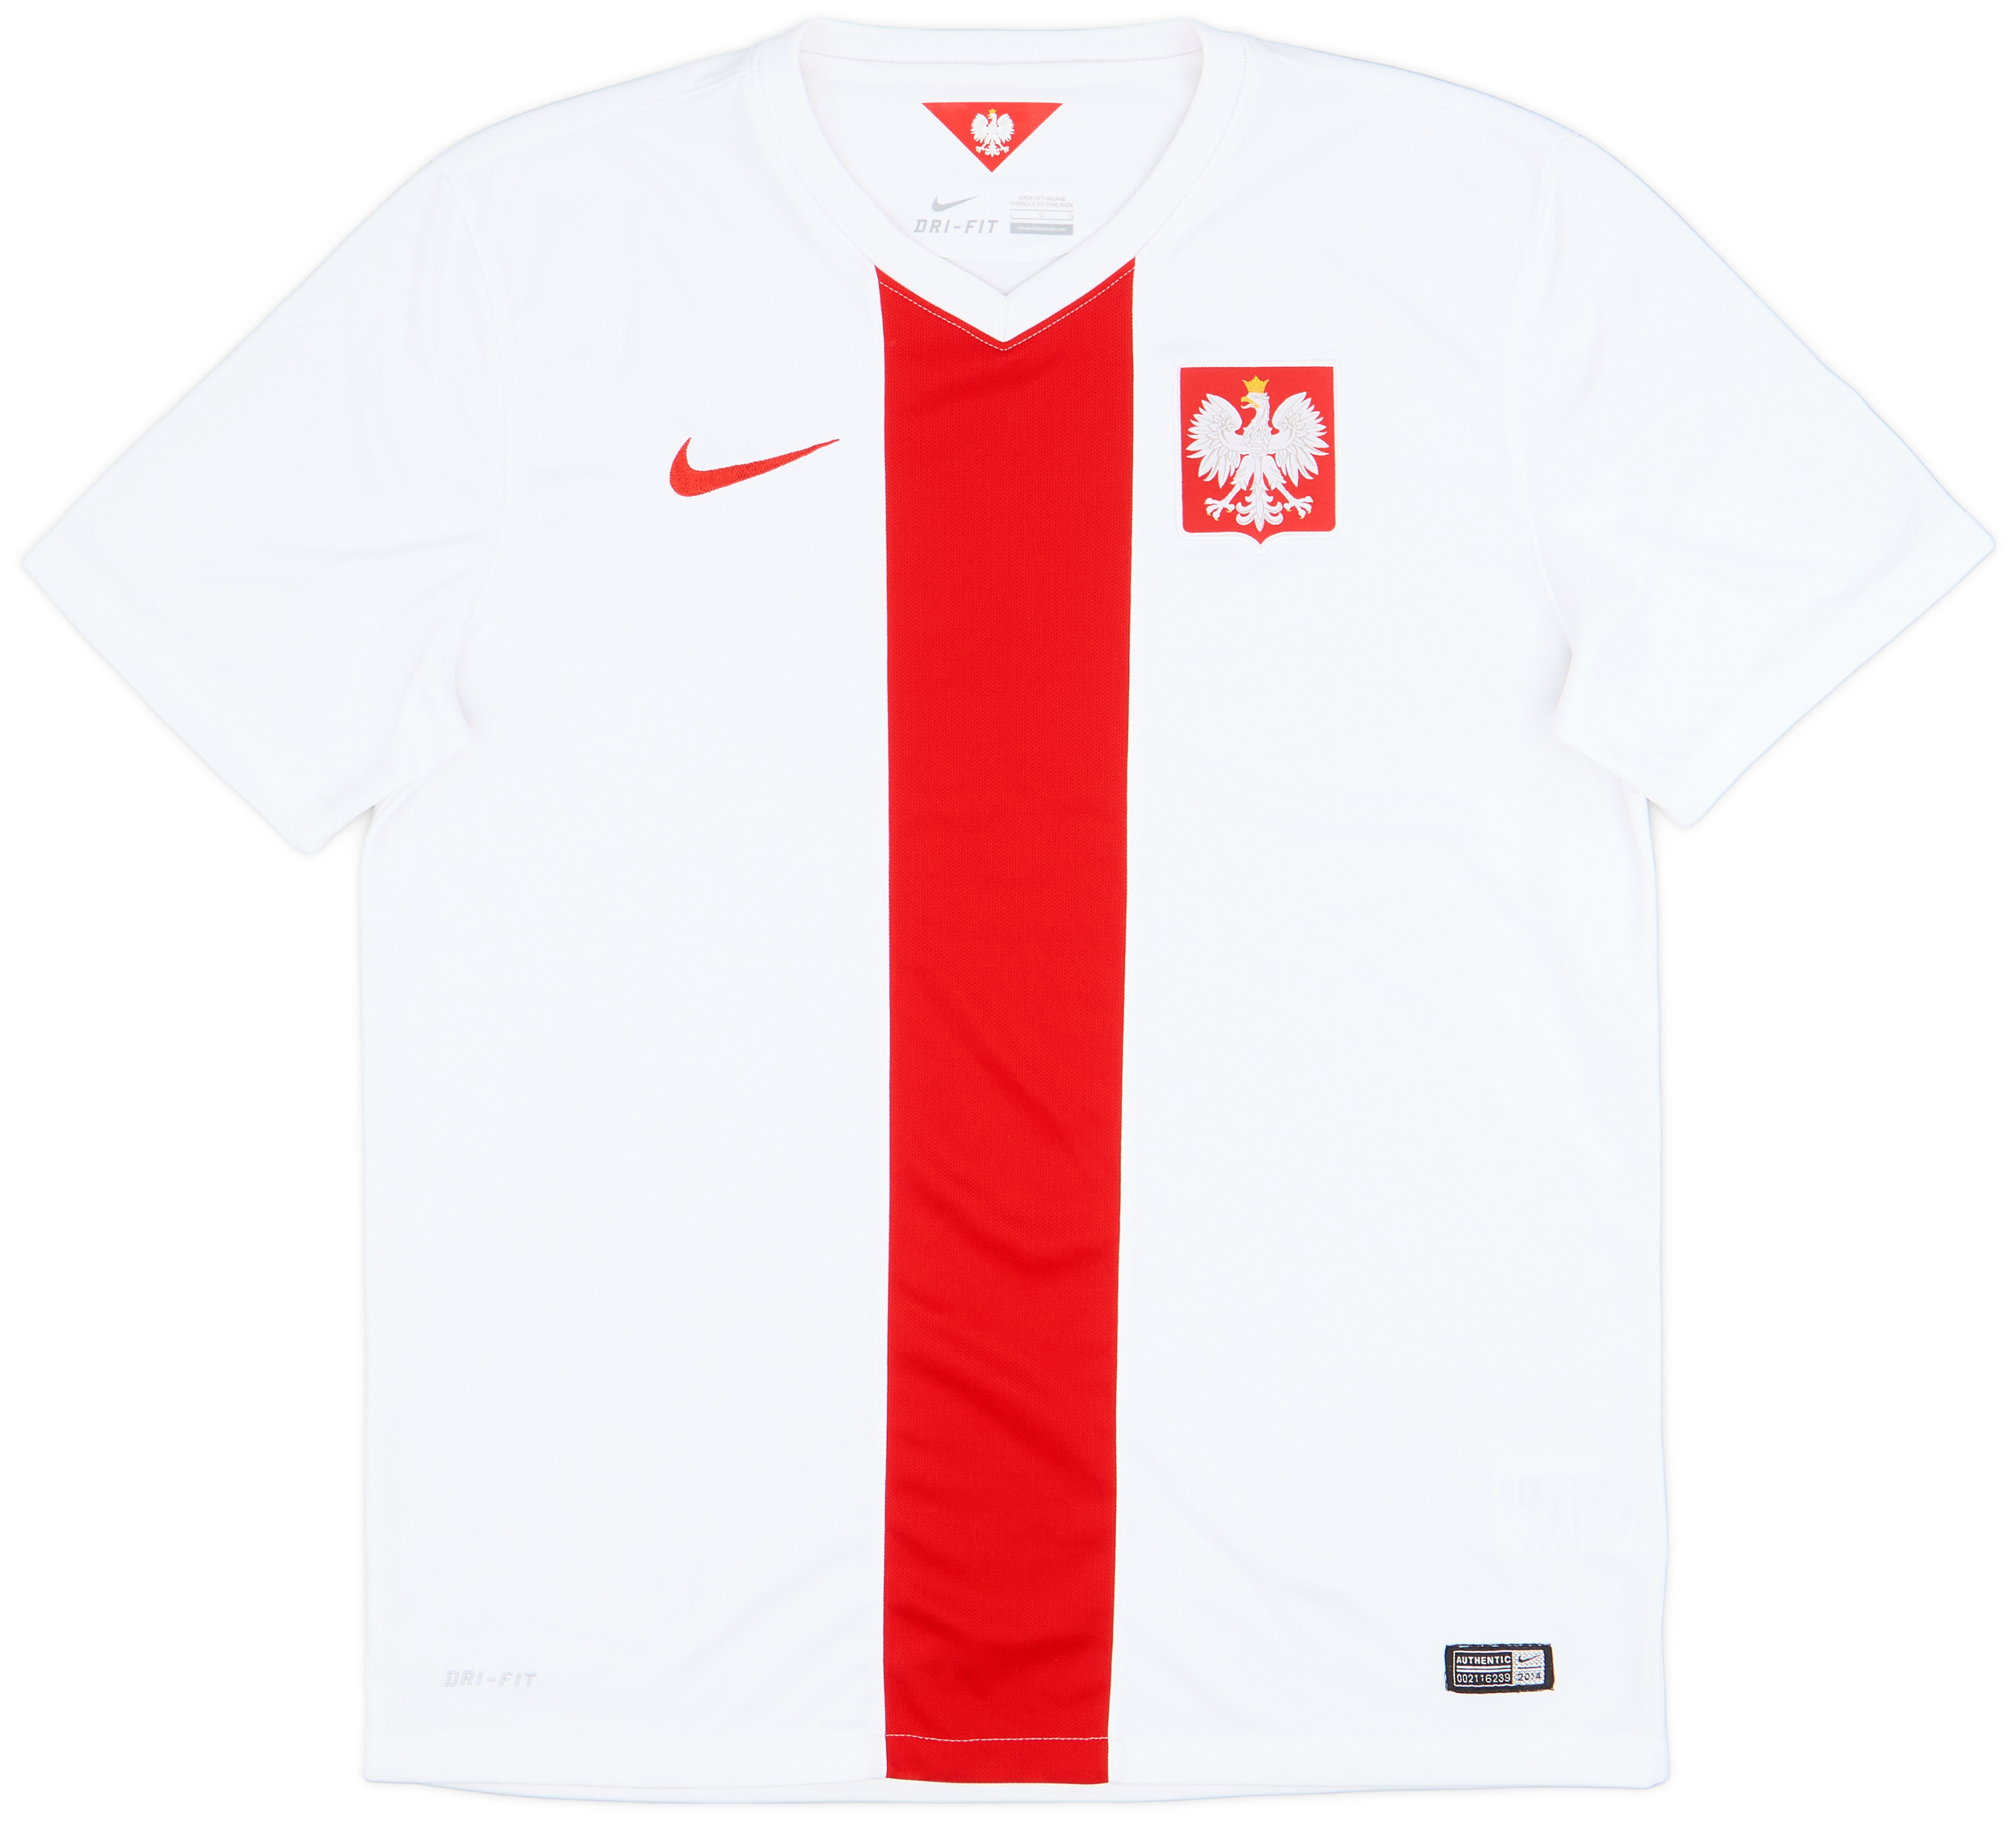 2014-16 Poland Home Shirt - 9/10 - ()